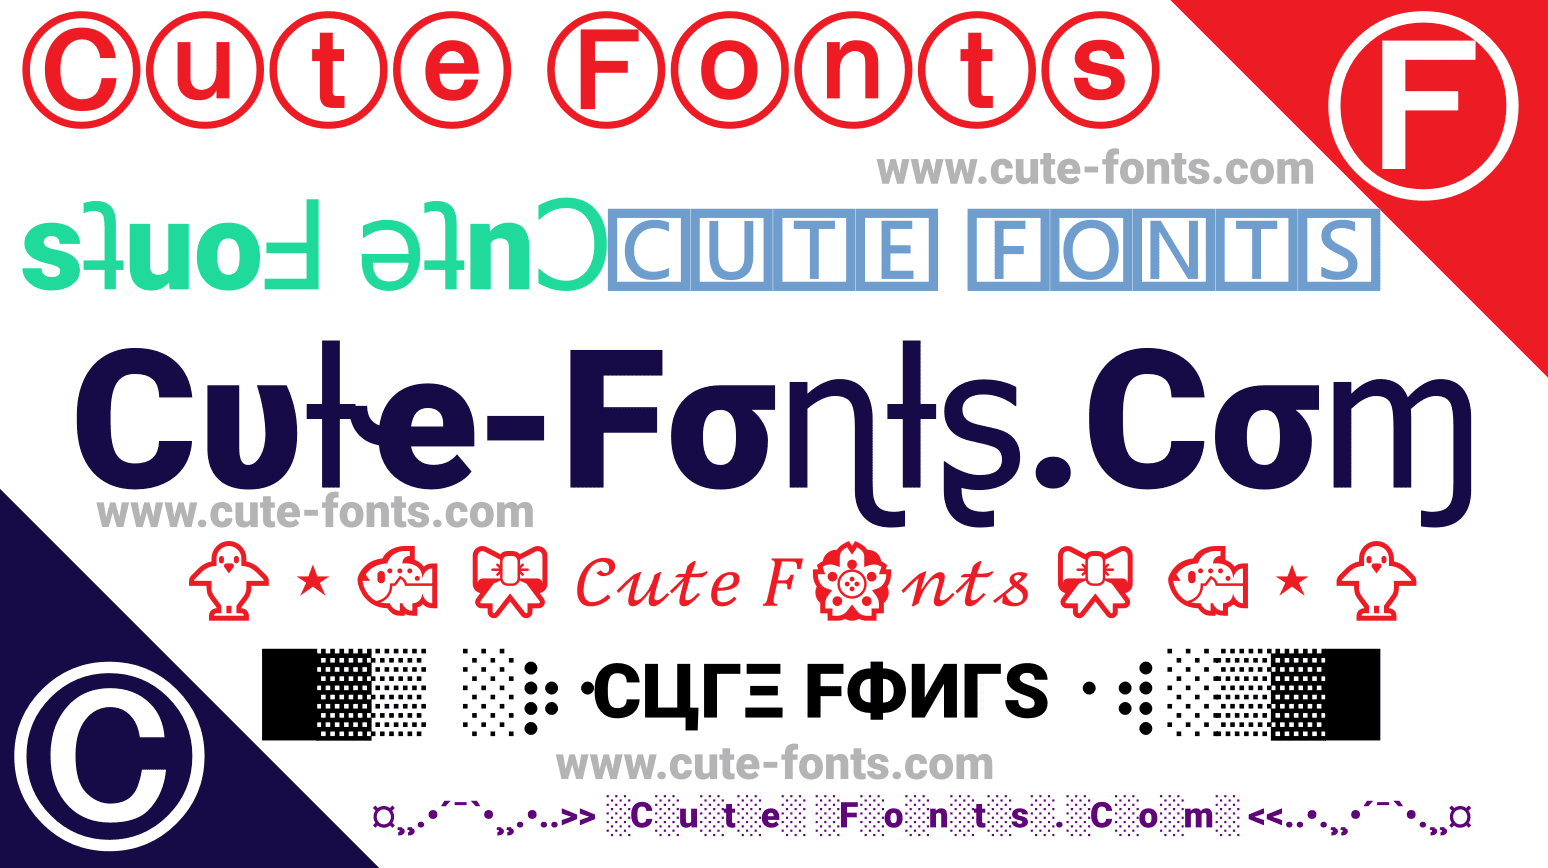 Cute Fonts ➜ #???????? ꧁༺Ⓕⓐⓝⓒⓨ༻꧂ ???????????????????????? Generator